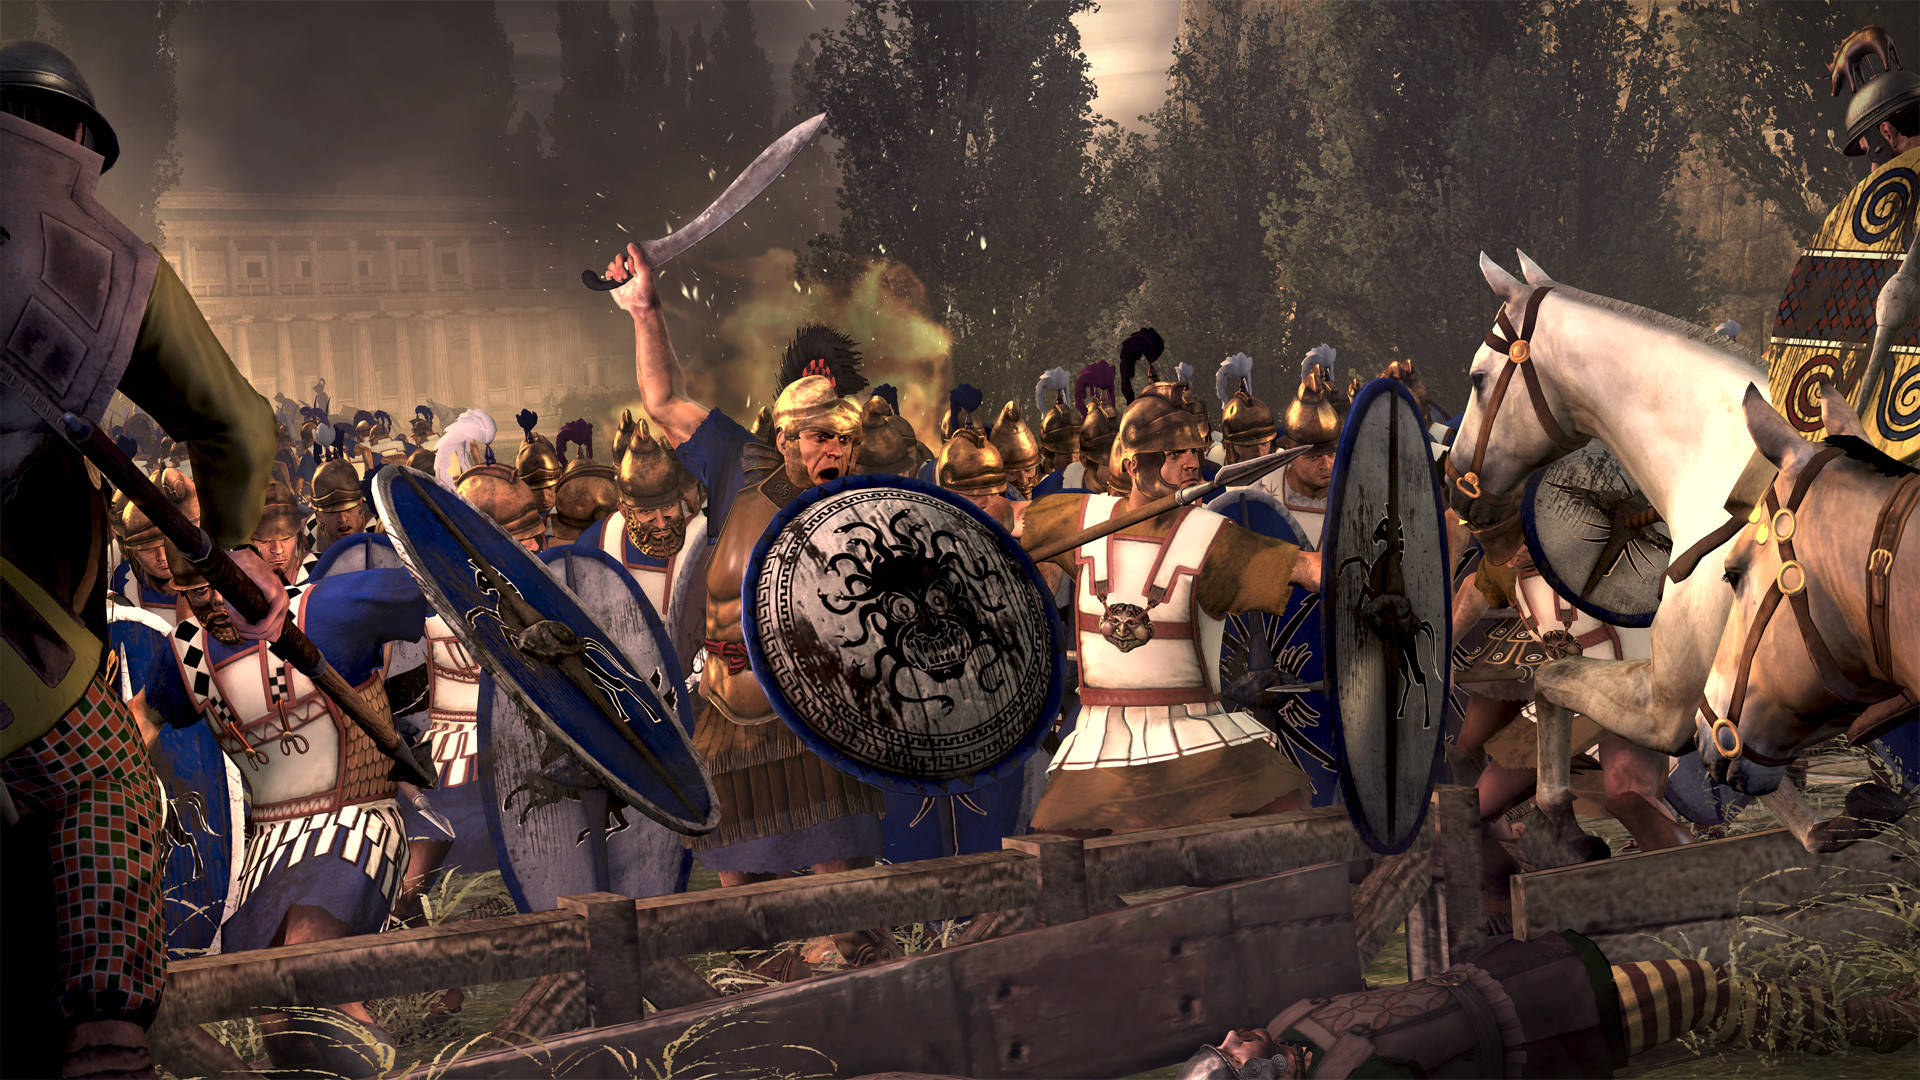 Unacaptura De Pantalla De Una Batalla Entre Romanos Y Griegos Fondo de pantalla